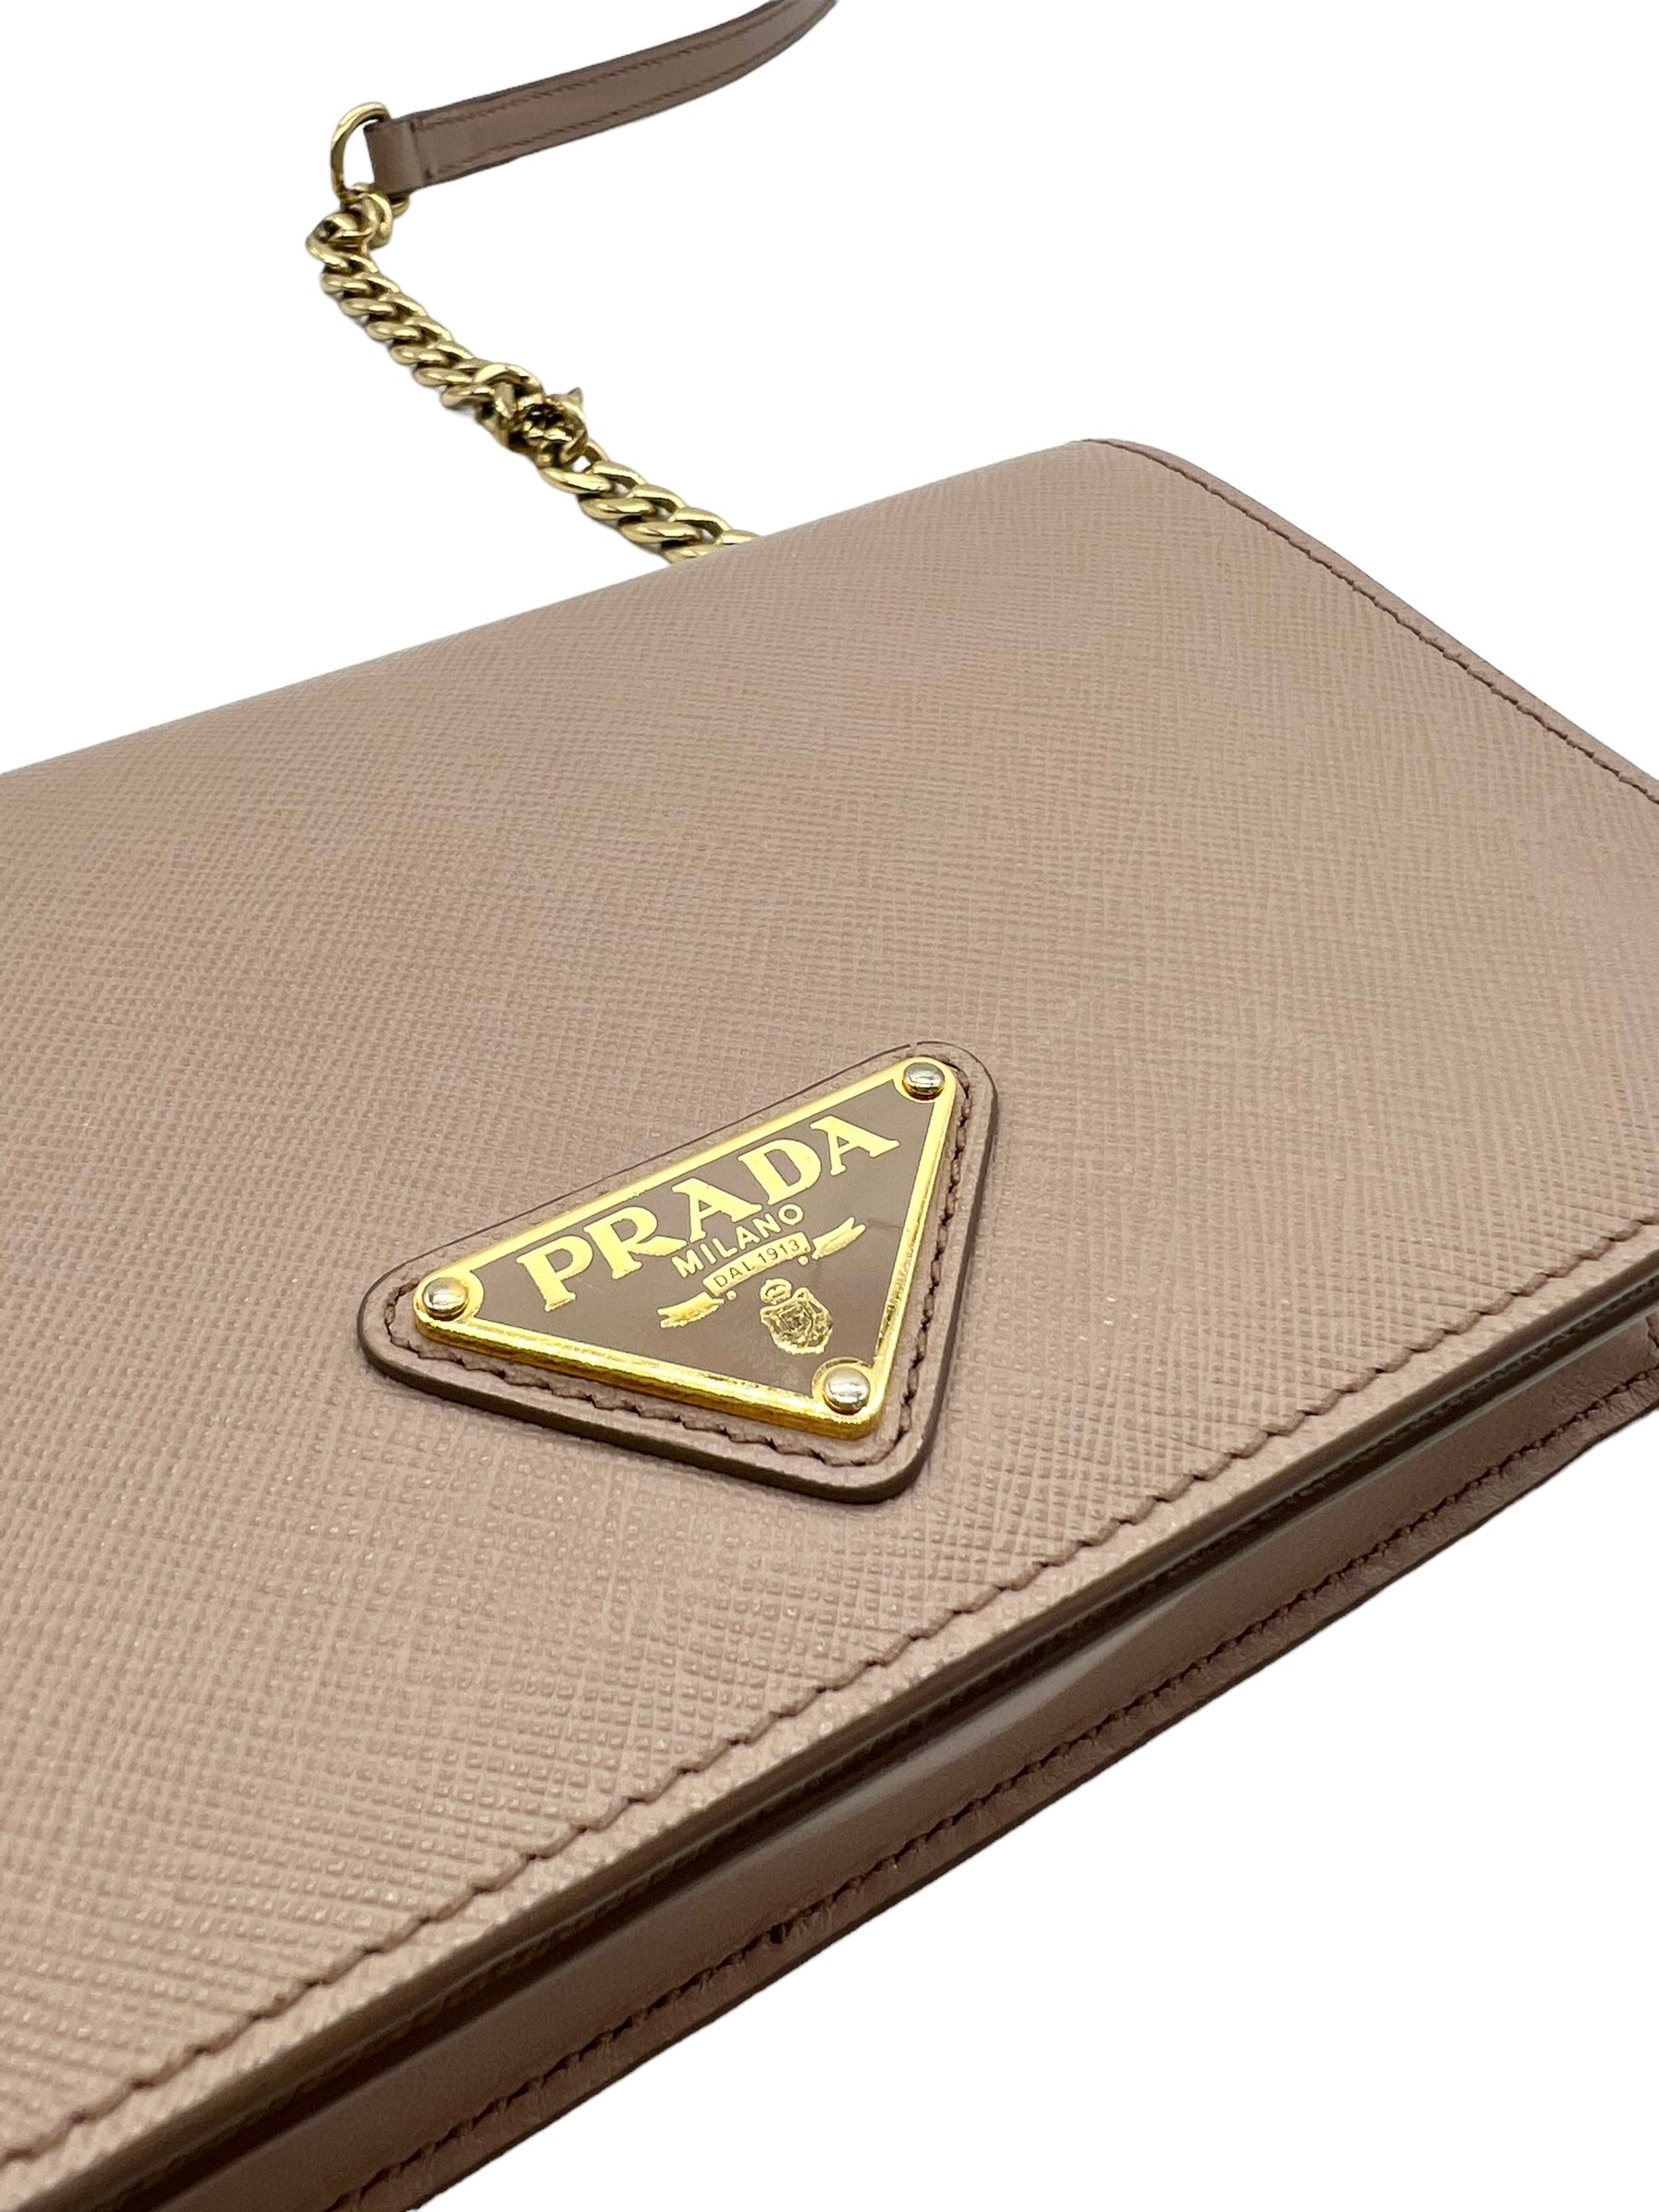 PRADA Authentic _Petalo Saffiano Lux Leather Chain Shoulder Bag 1BD009